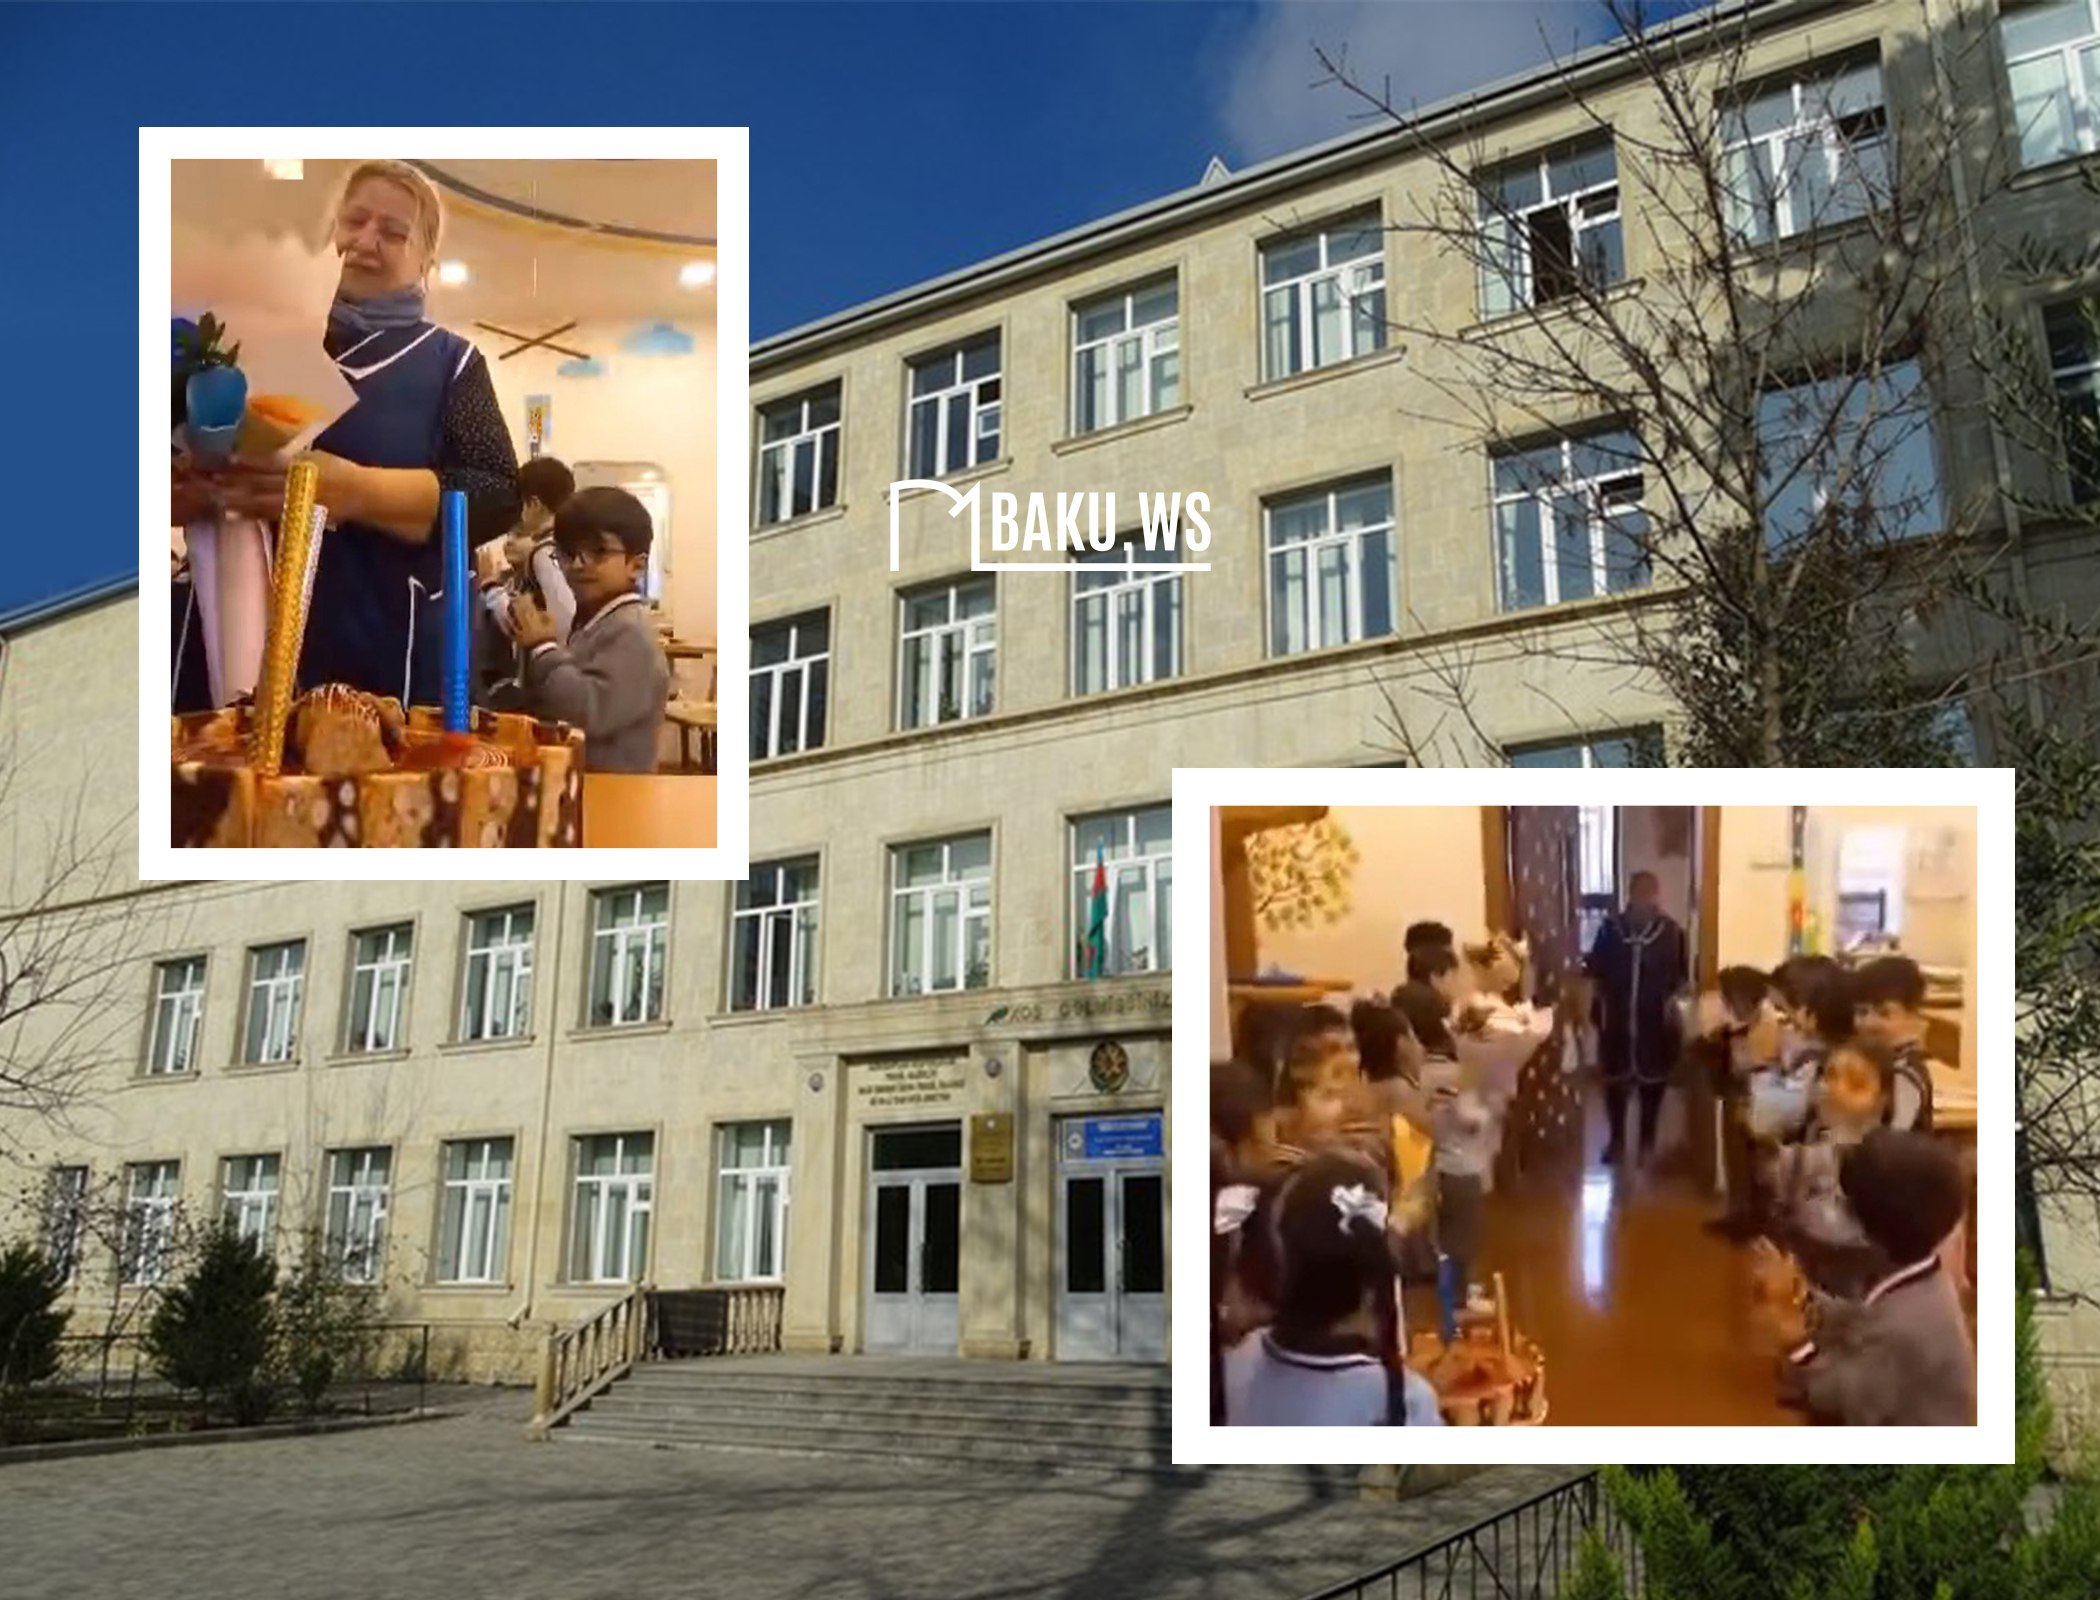 Снятый в бакинской школе ролик вызвал восторг в Сети - ВИДЕО